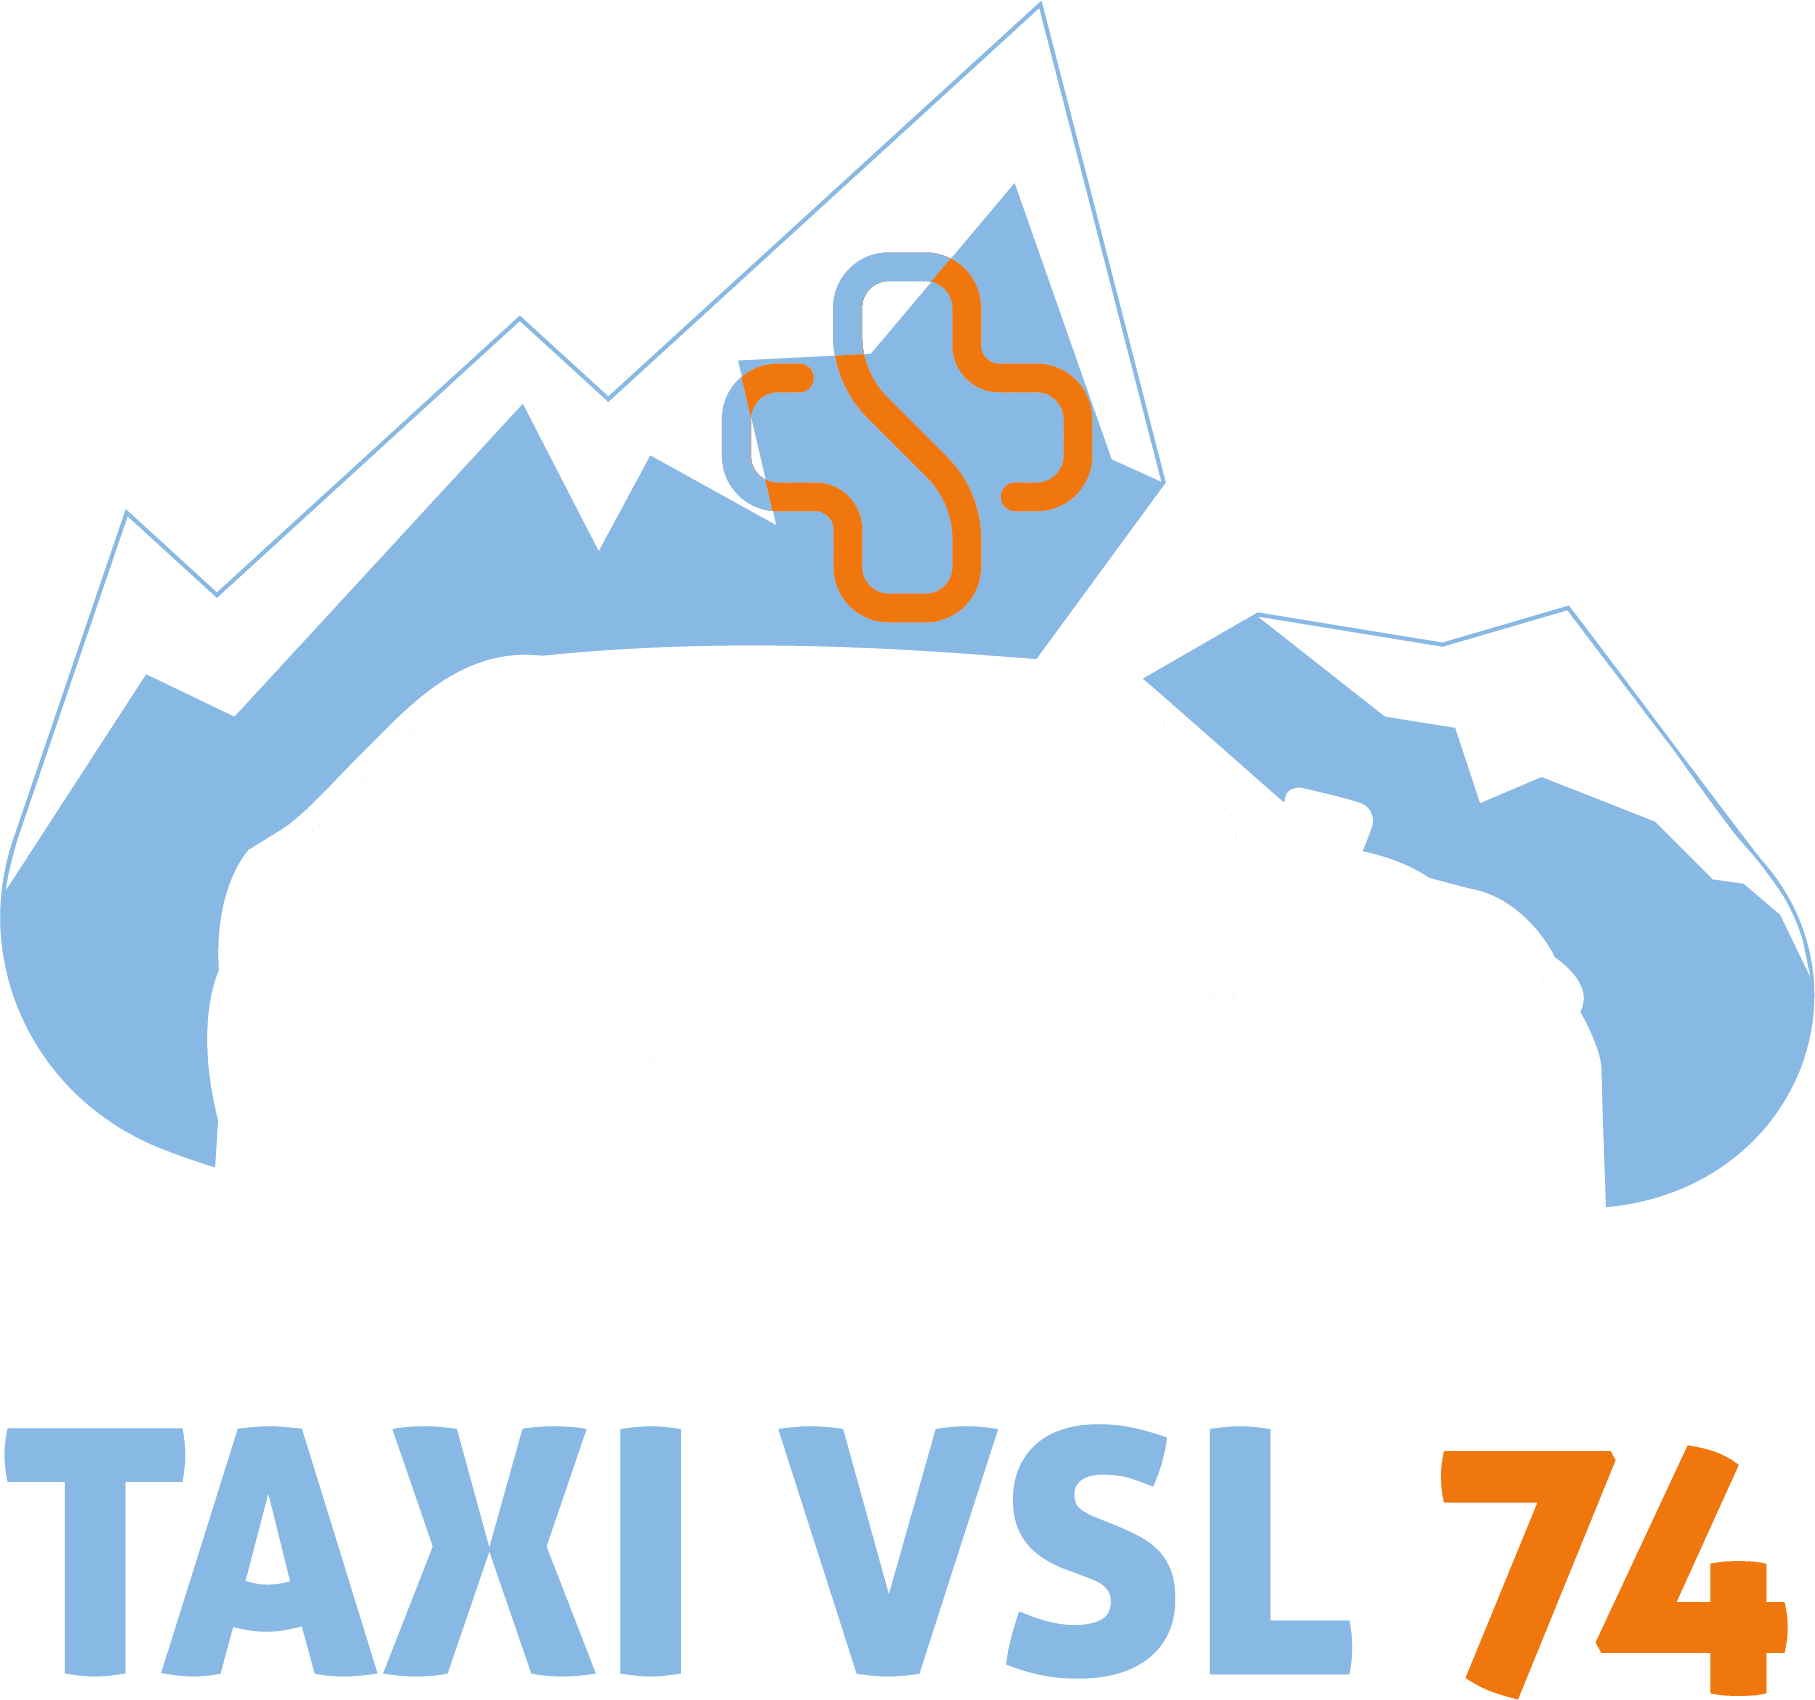 Logo taxi vsl blanc